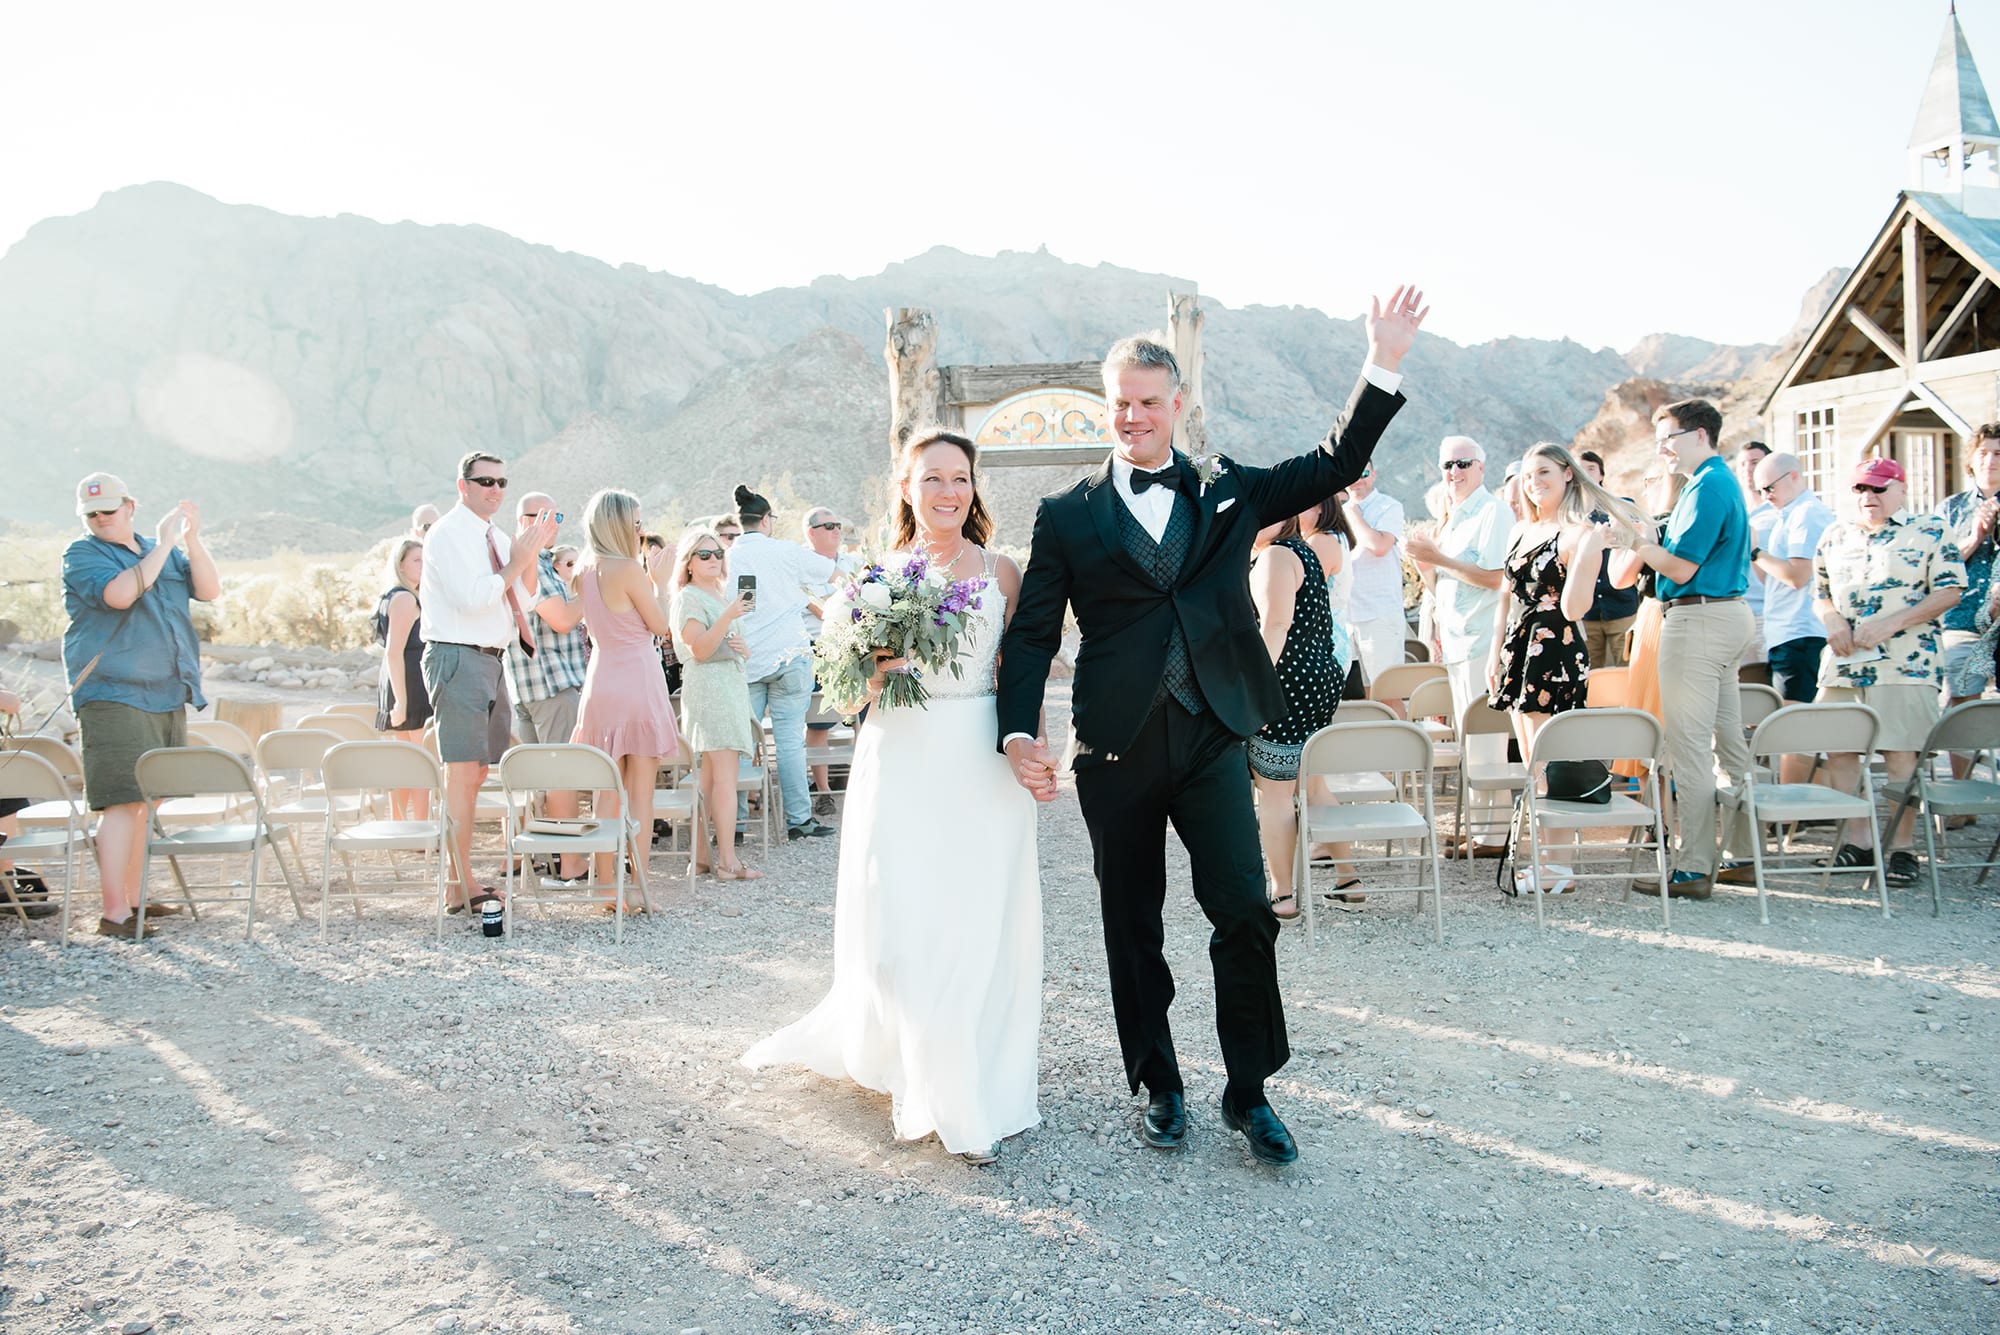 Vicky + Mark: A Real Wedding in Eldorado Canyon